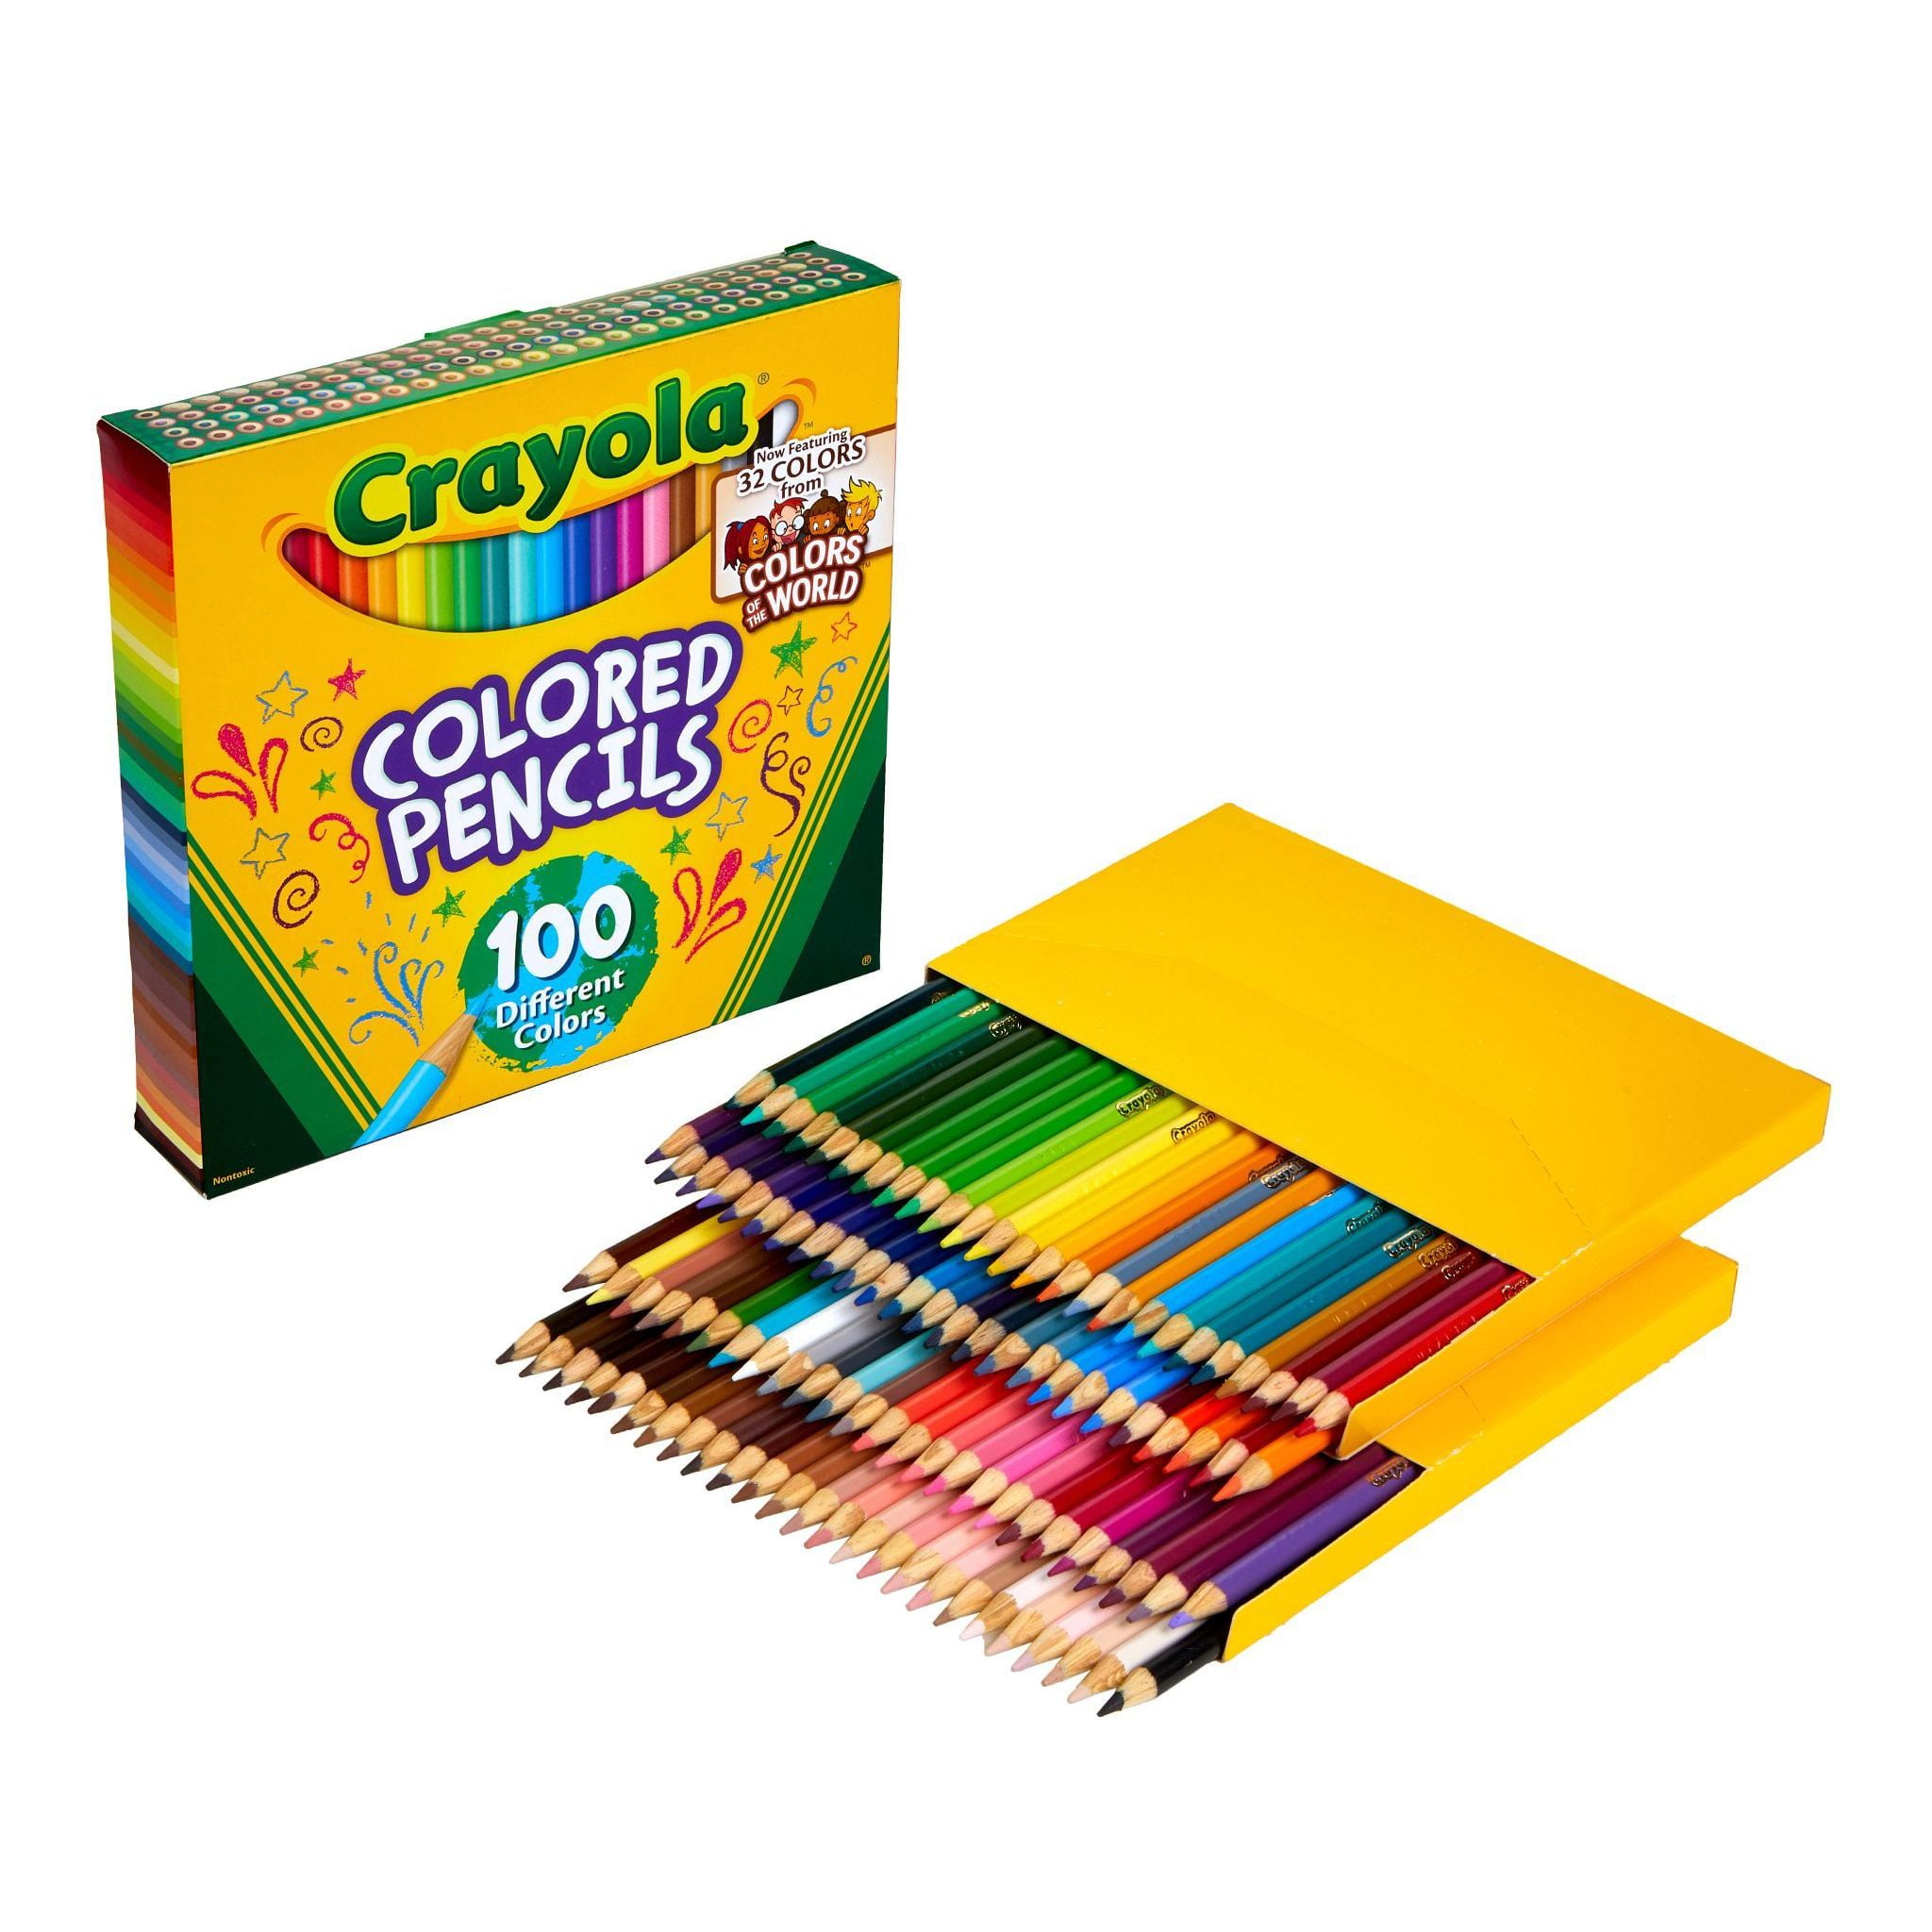 Crayola Colored Pencils 100 ct.